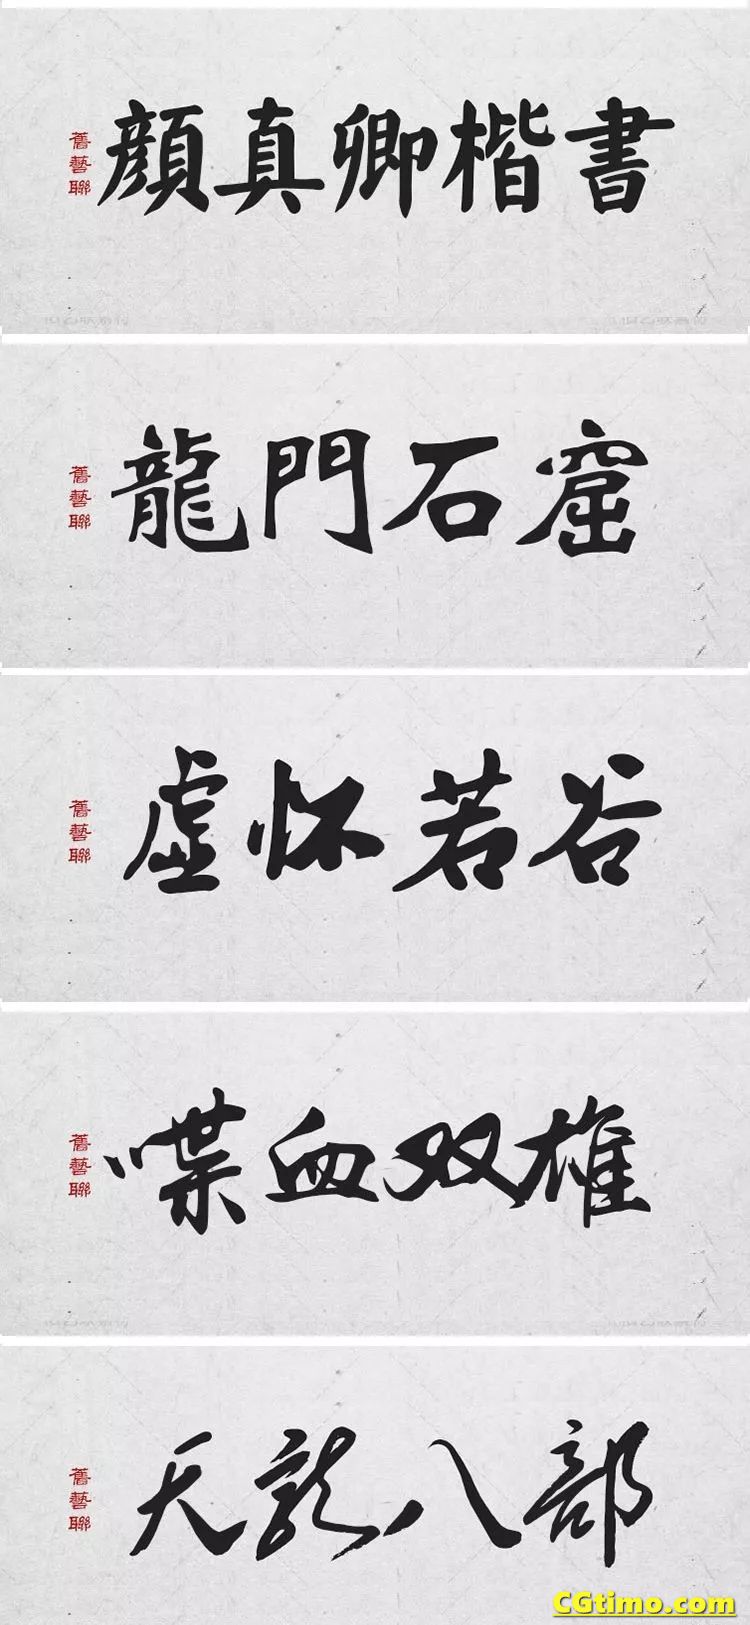 字体-300款中国风高端毛笔字体+笔触合集 字体下载 第11张